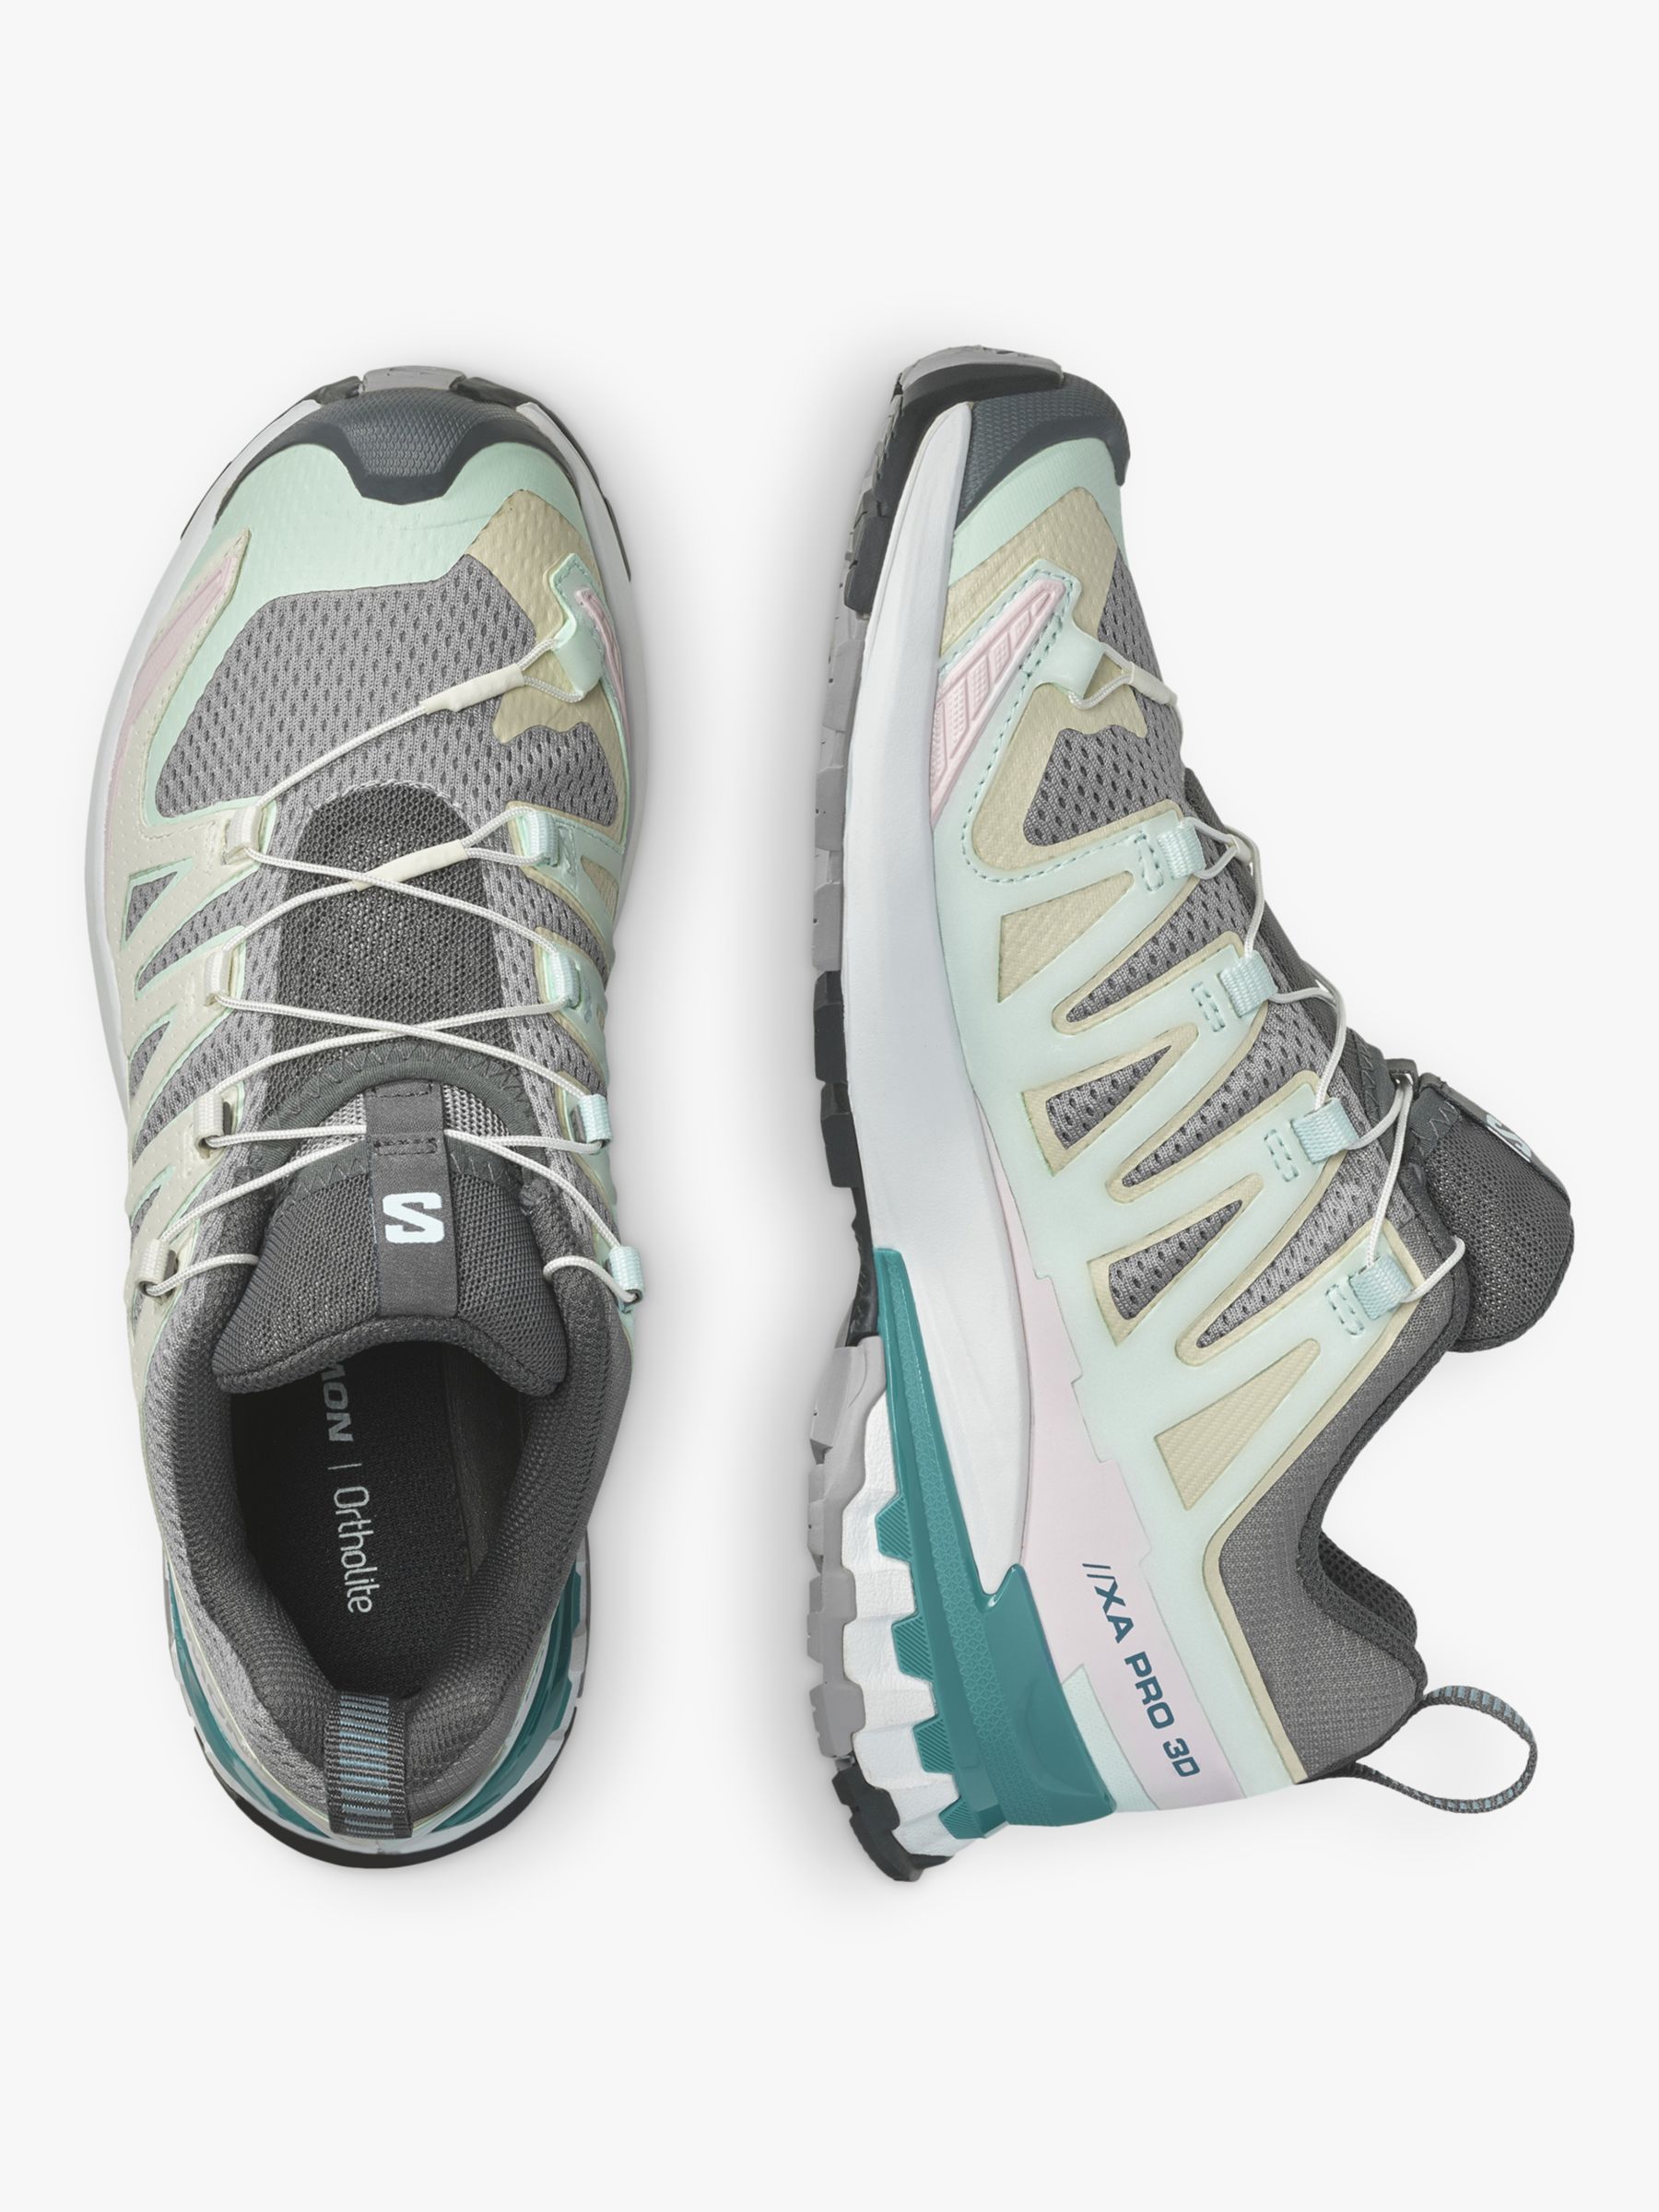 Buy Salomon XA Pro 3D V9 Women's Trail Running Shoes, White/Ivory Online at johnlewis.com